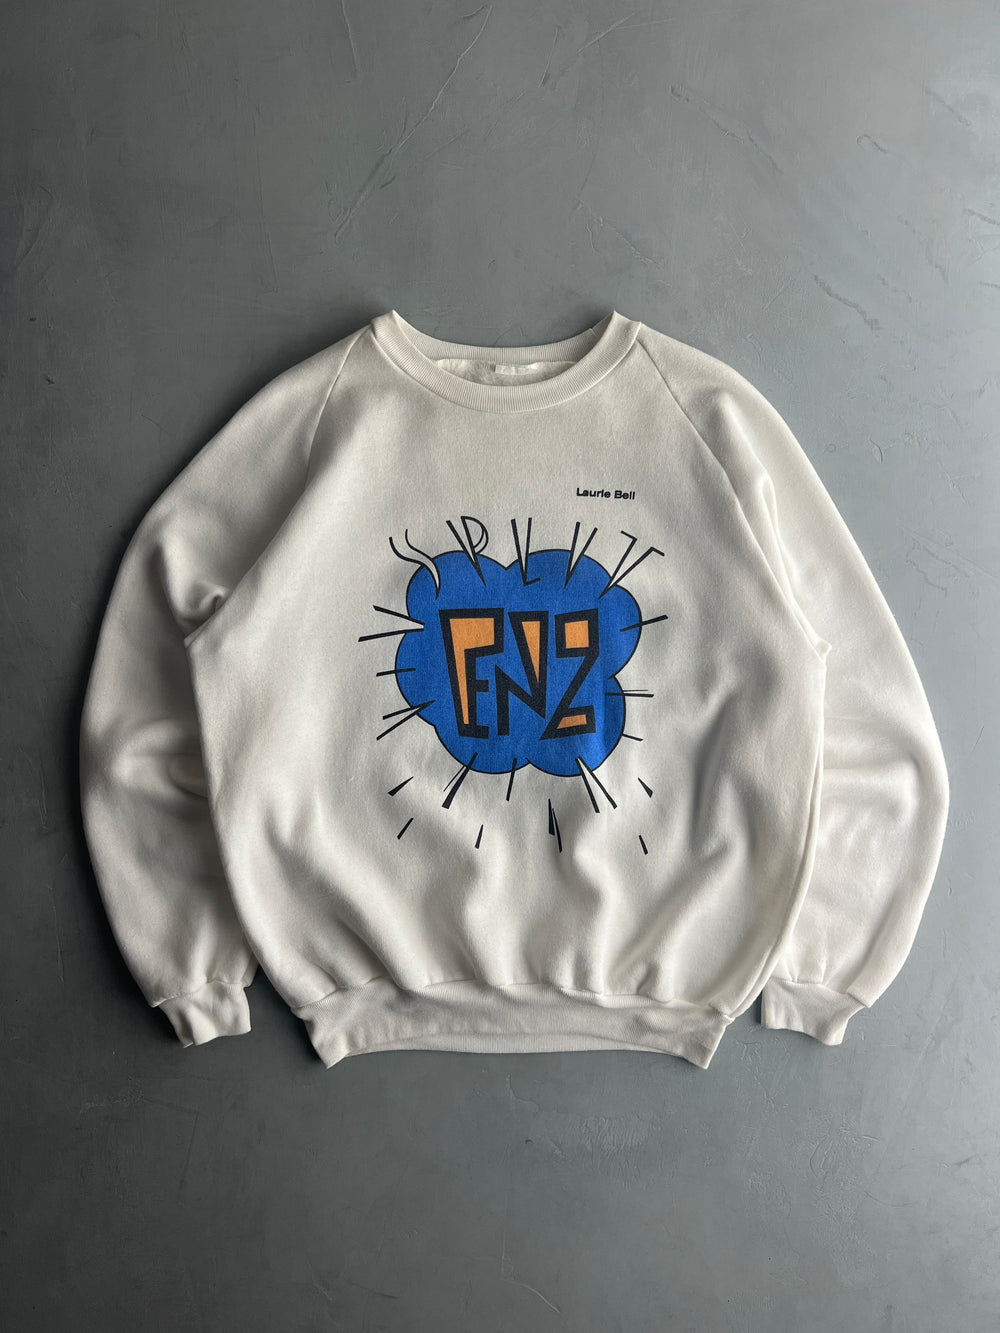 '84 Split Enz 'See Ya Round' Tour Sweatshirt [XL]